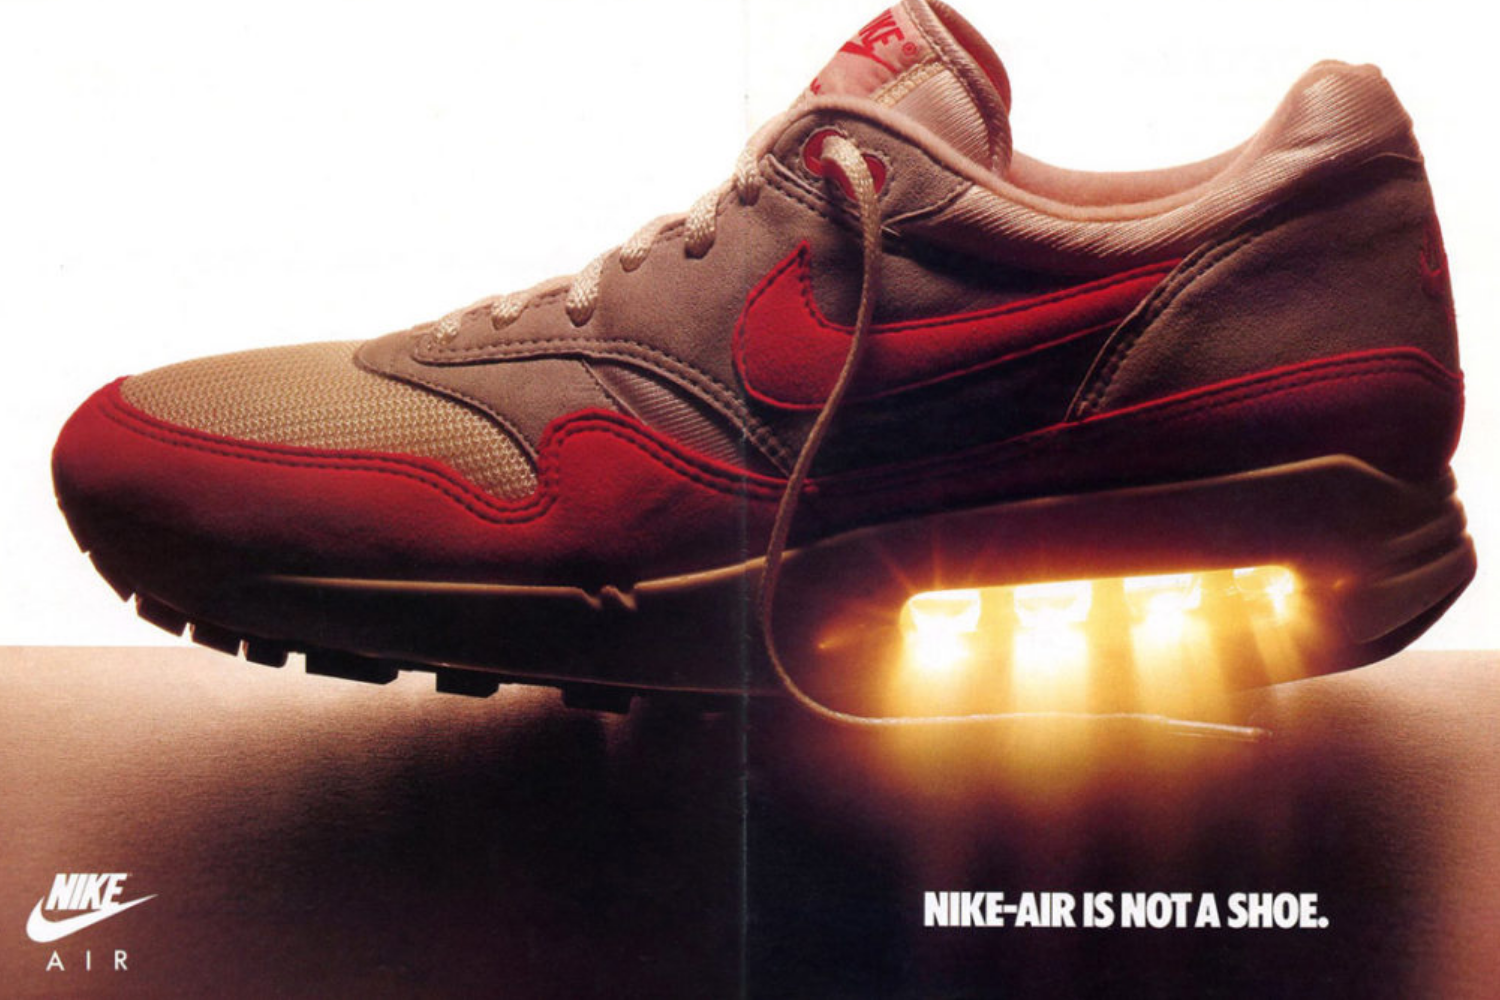 uitvinding communicatie Pracht Nike Air Max Month: De Big Bubble keert terug - Sneakerjagers